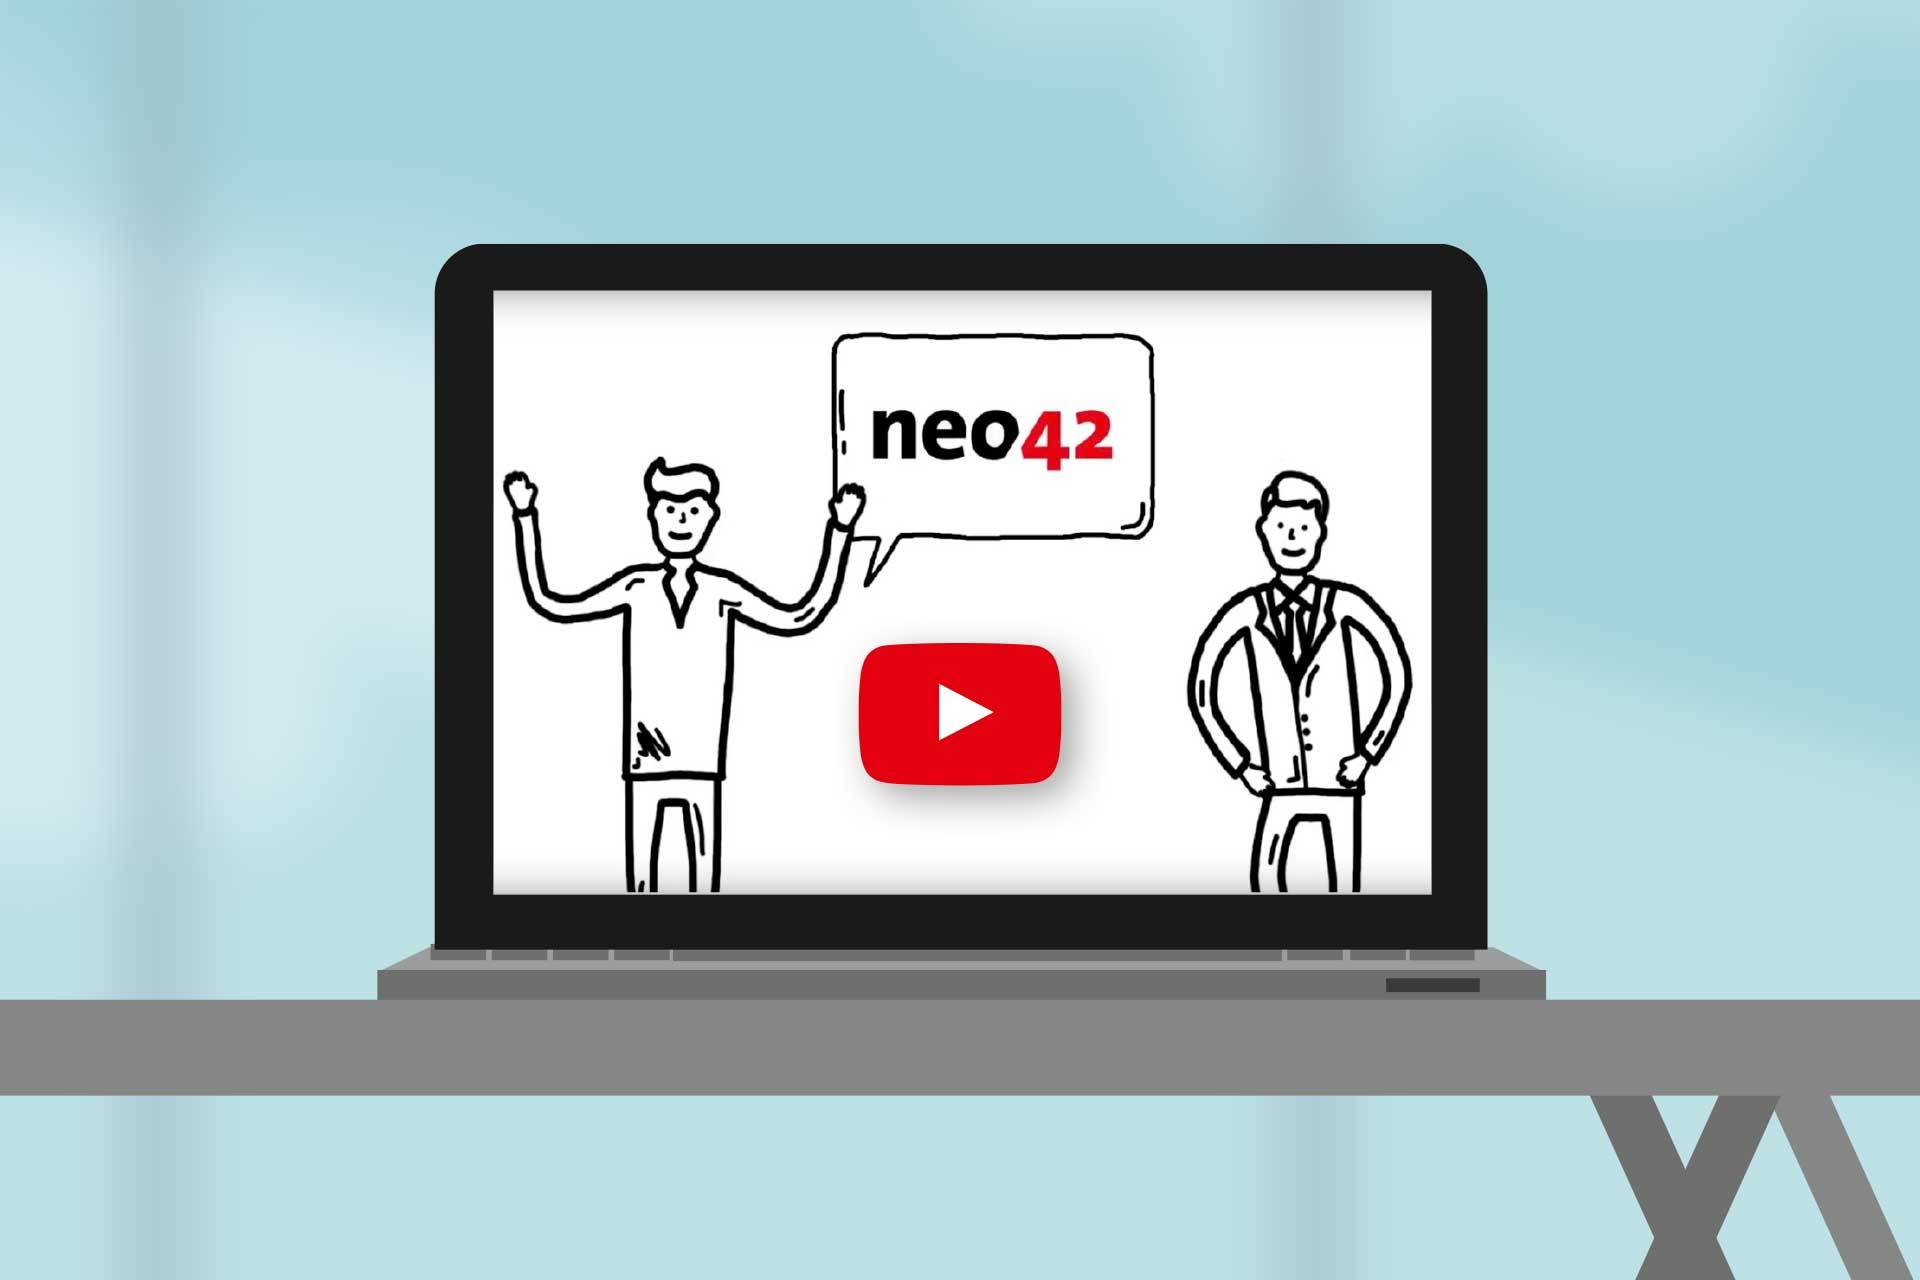 Dieses Video erklärt die Funktionsweise und die Vorteile des neo42 Paketdepots mit fertigen Softwarepaketen für Empirum, SCCM, Intune oder VMware Workspace ONE